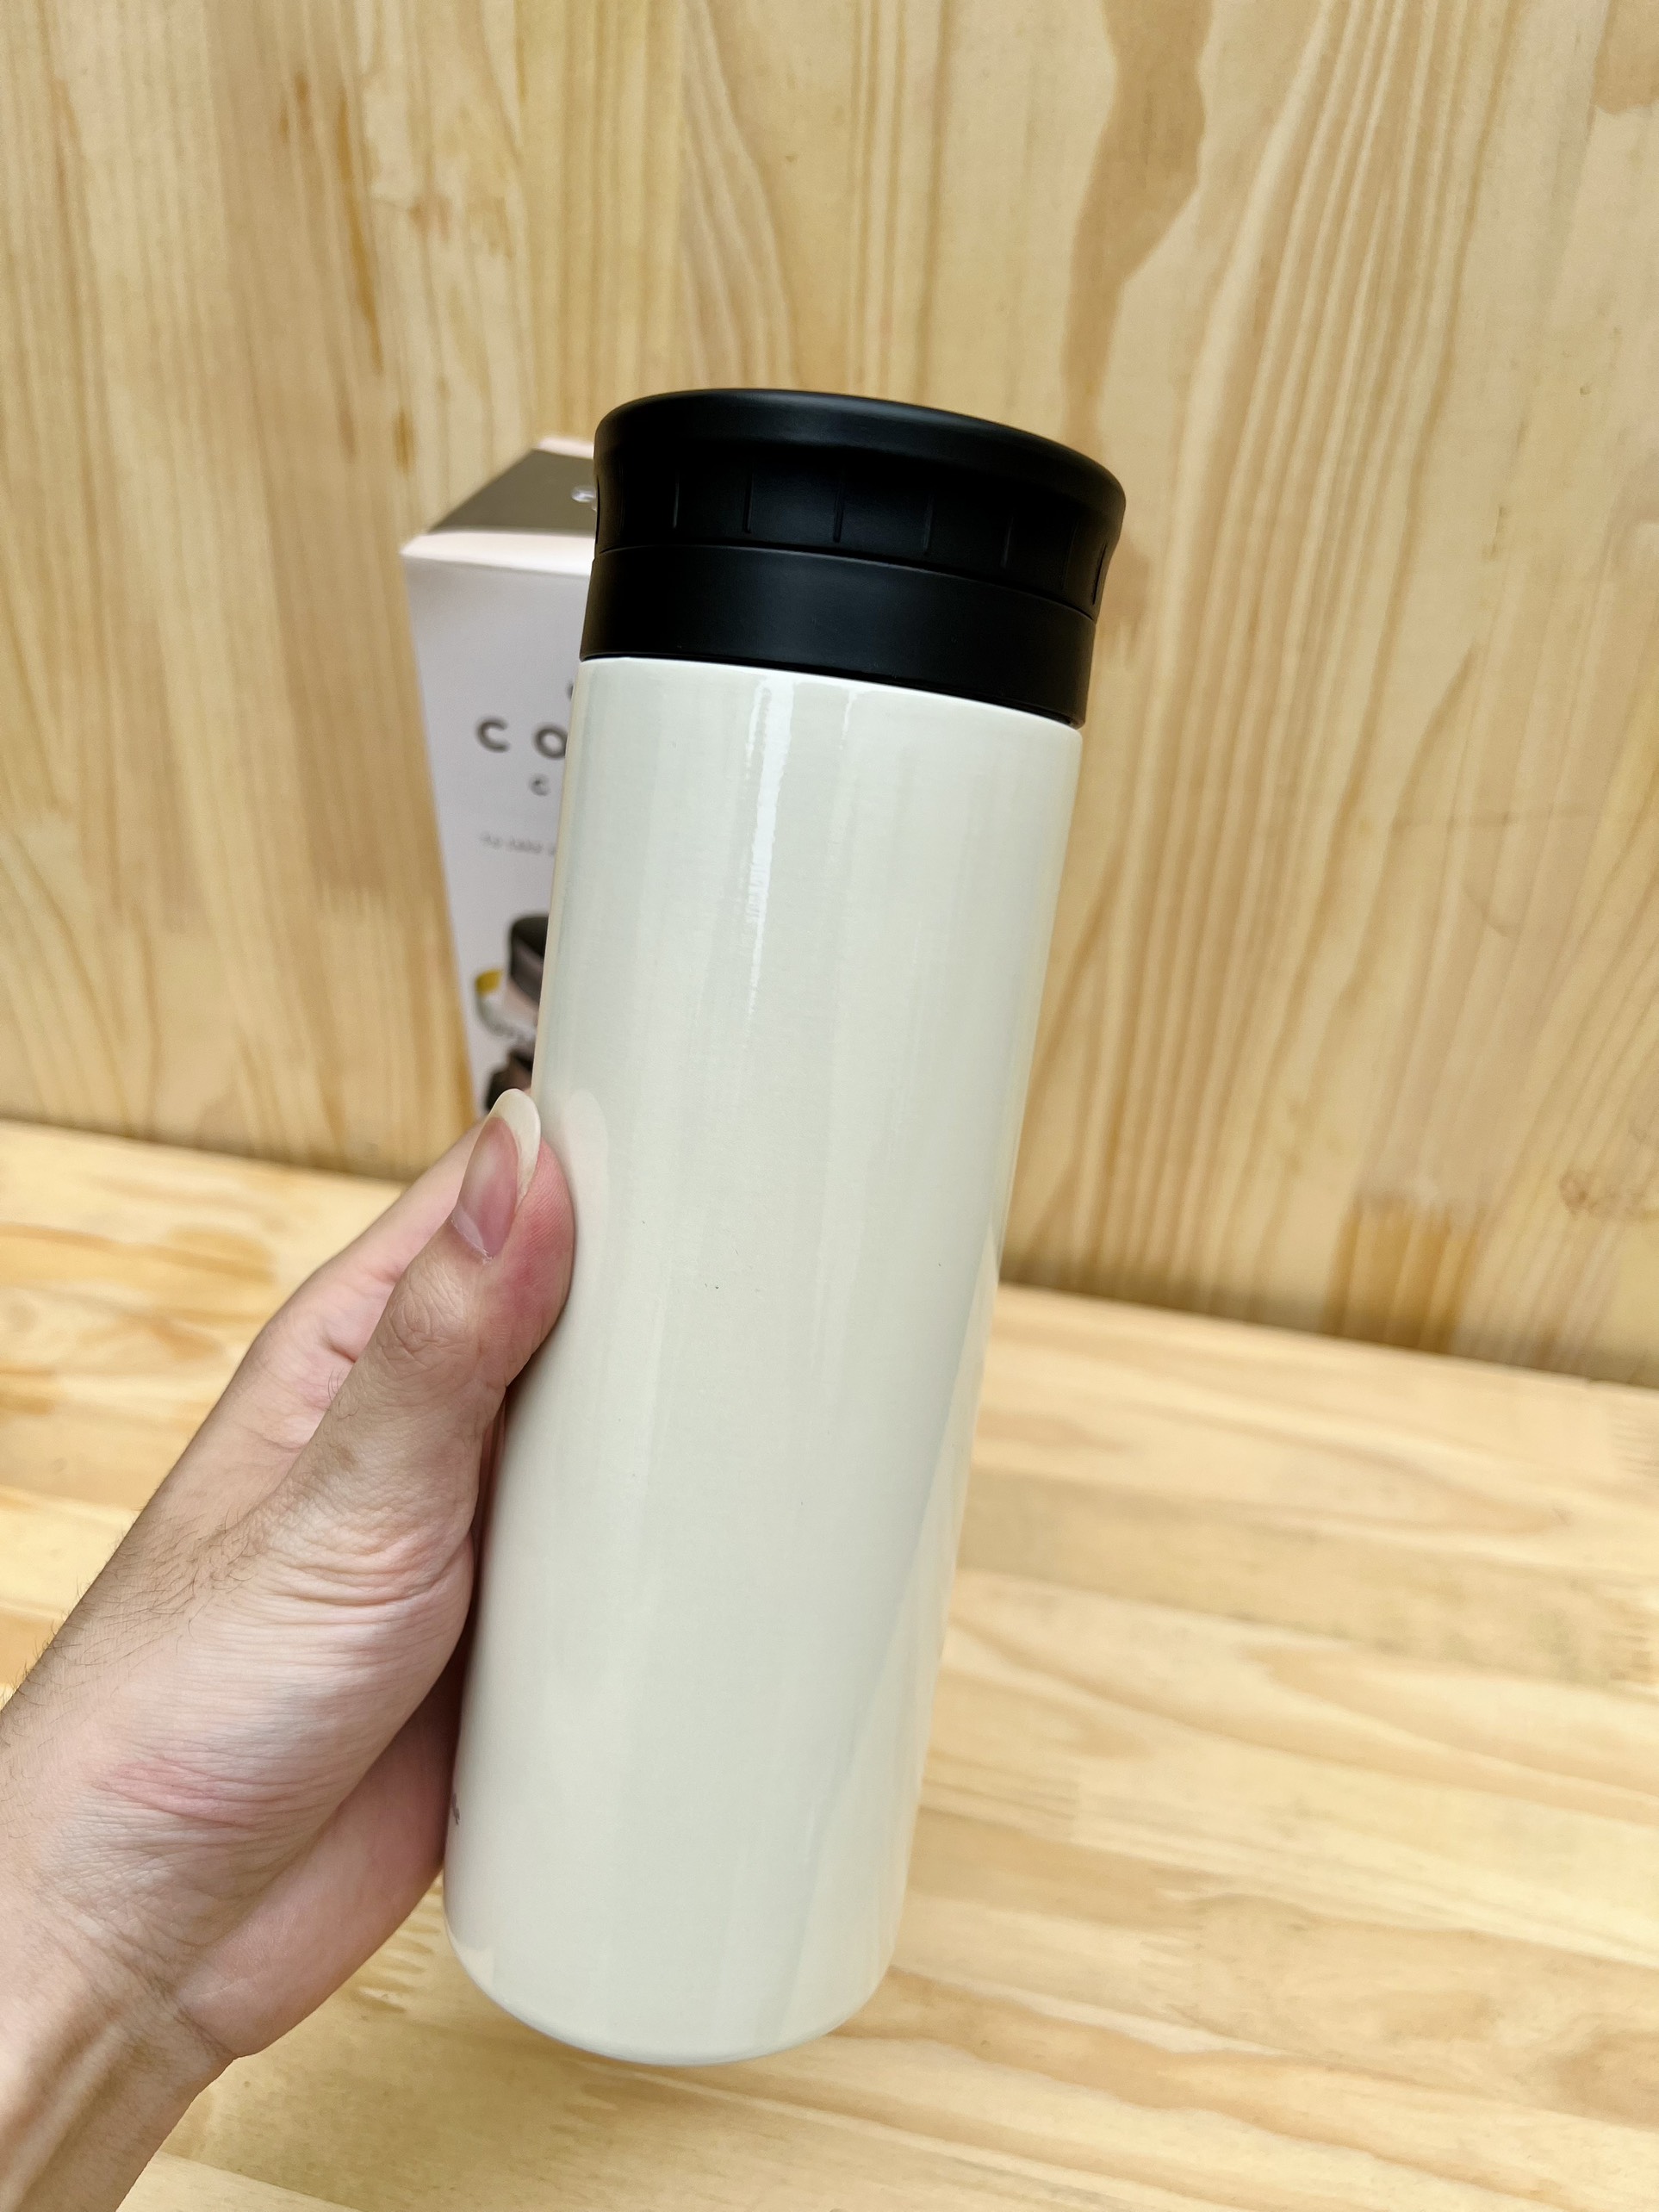 Bình giữ nhiệt cao cấp Coco Café 500ml (màu trắng)